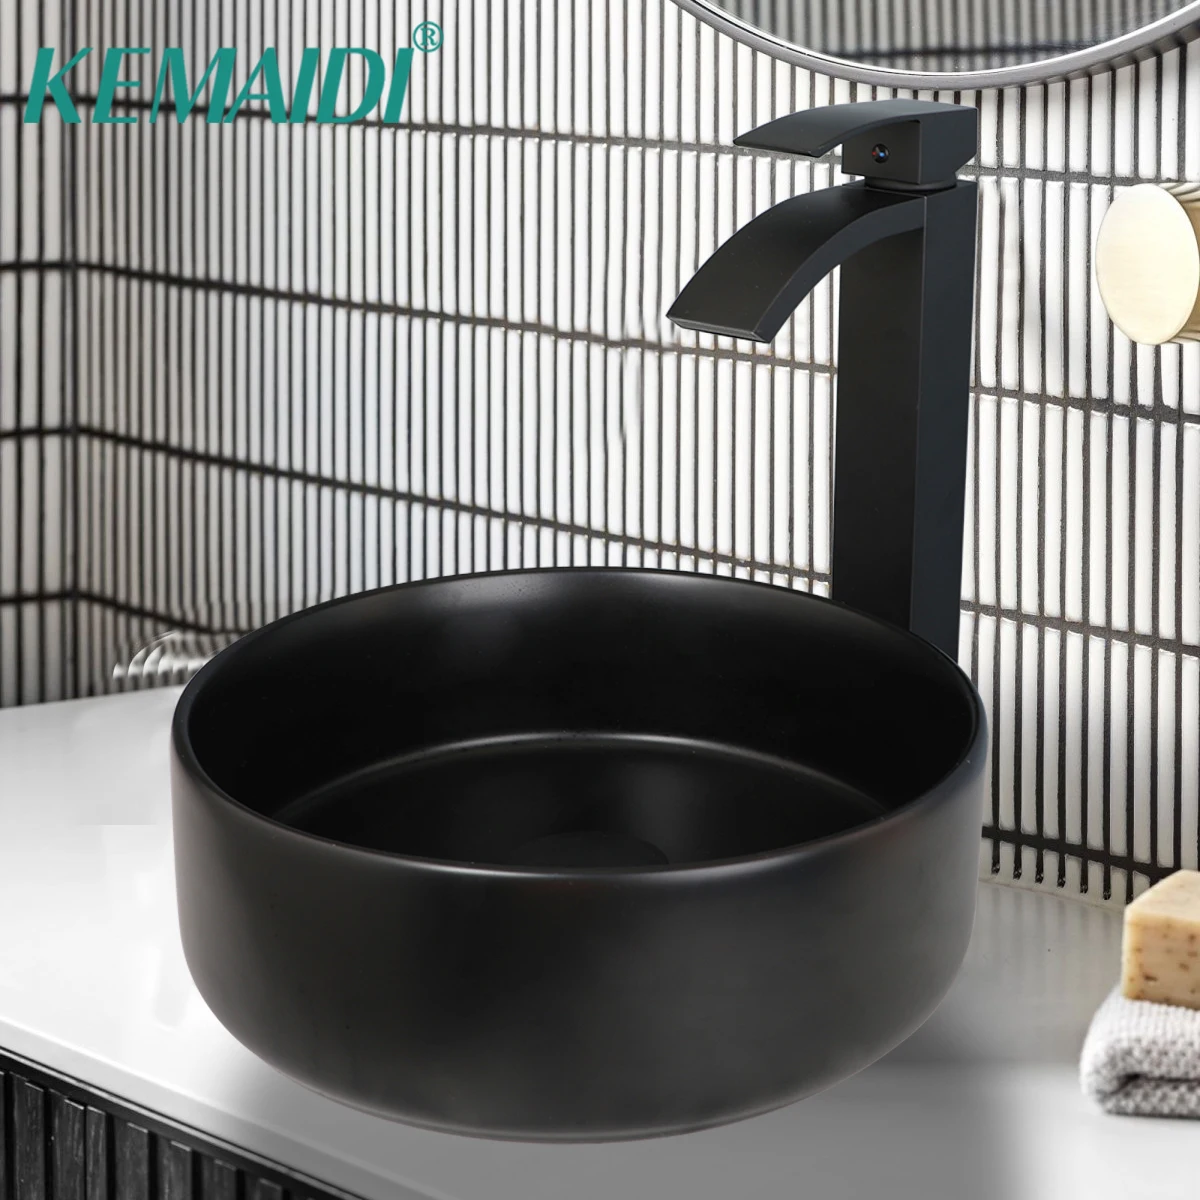 

Матовый черный керамический смеситель KEMAIDI, Круглый кран для умывальника и раковины в ванную комнату, комбинированный, для горячей и холодной воды, смесители